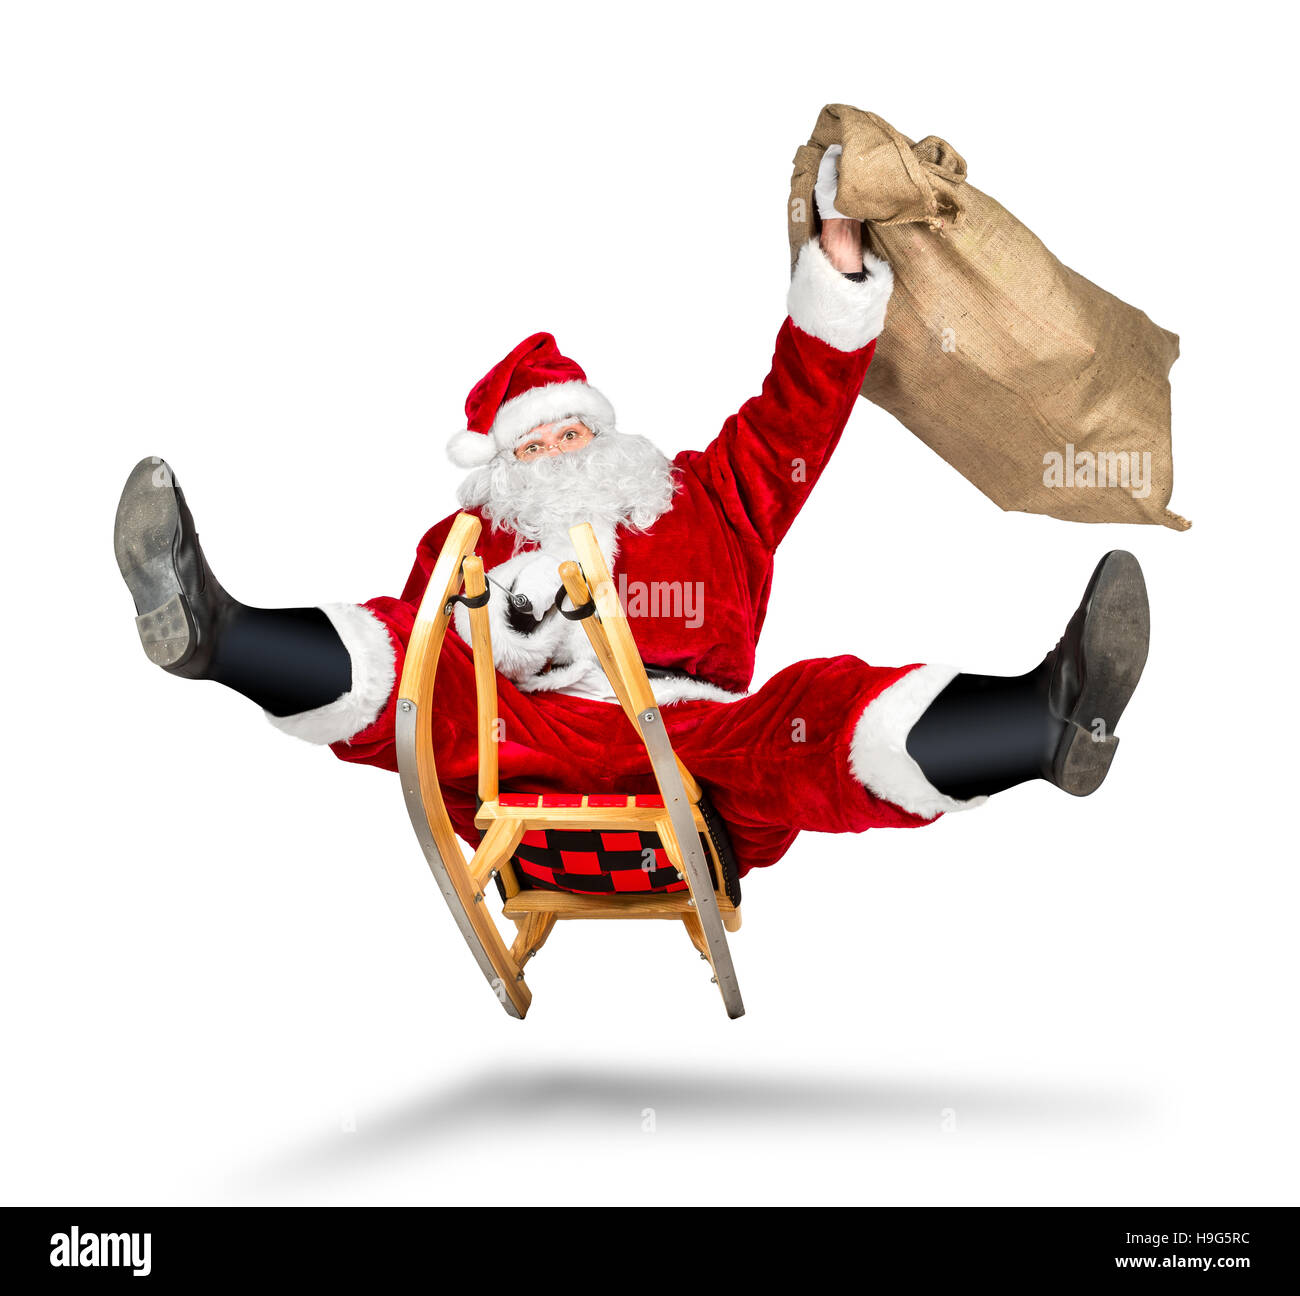 Crazy santa claus en su trineo hilarante fast funny crazy xmas regalo de navidad fondo blanco aislado de entrega Foto de stock